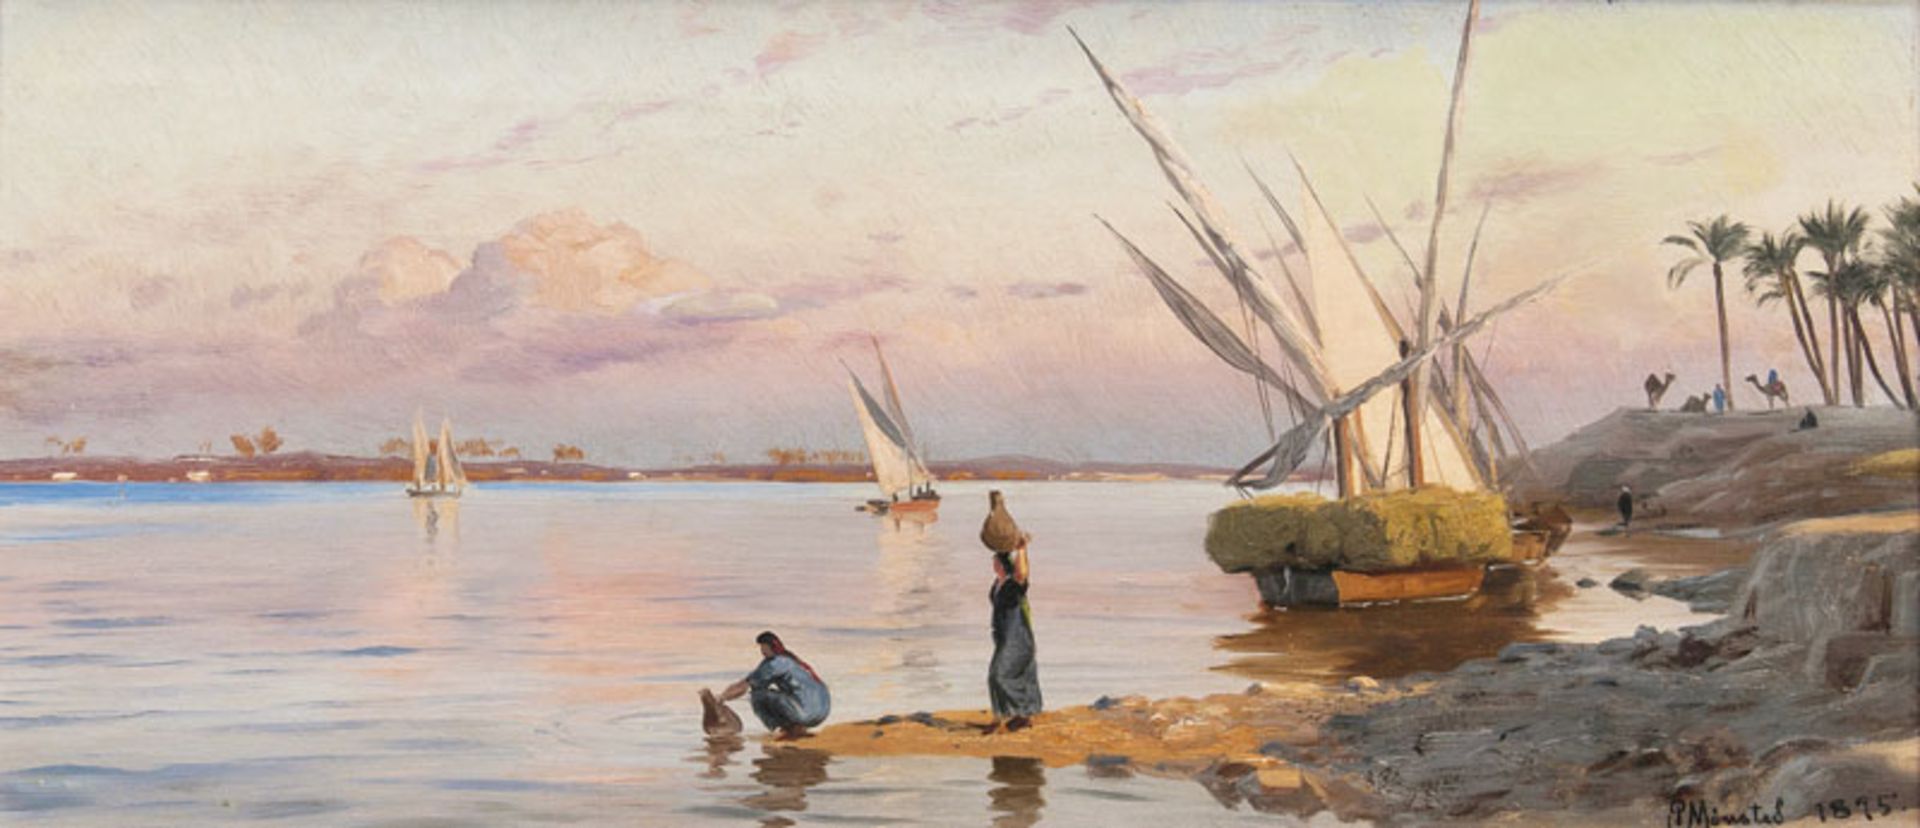 Peder Mönsted (Grenaa 1859 - Fredensborg 1941) Abend am Nil Öl/Lw., 27,5 x 58 cm, r. u. sign. u.